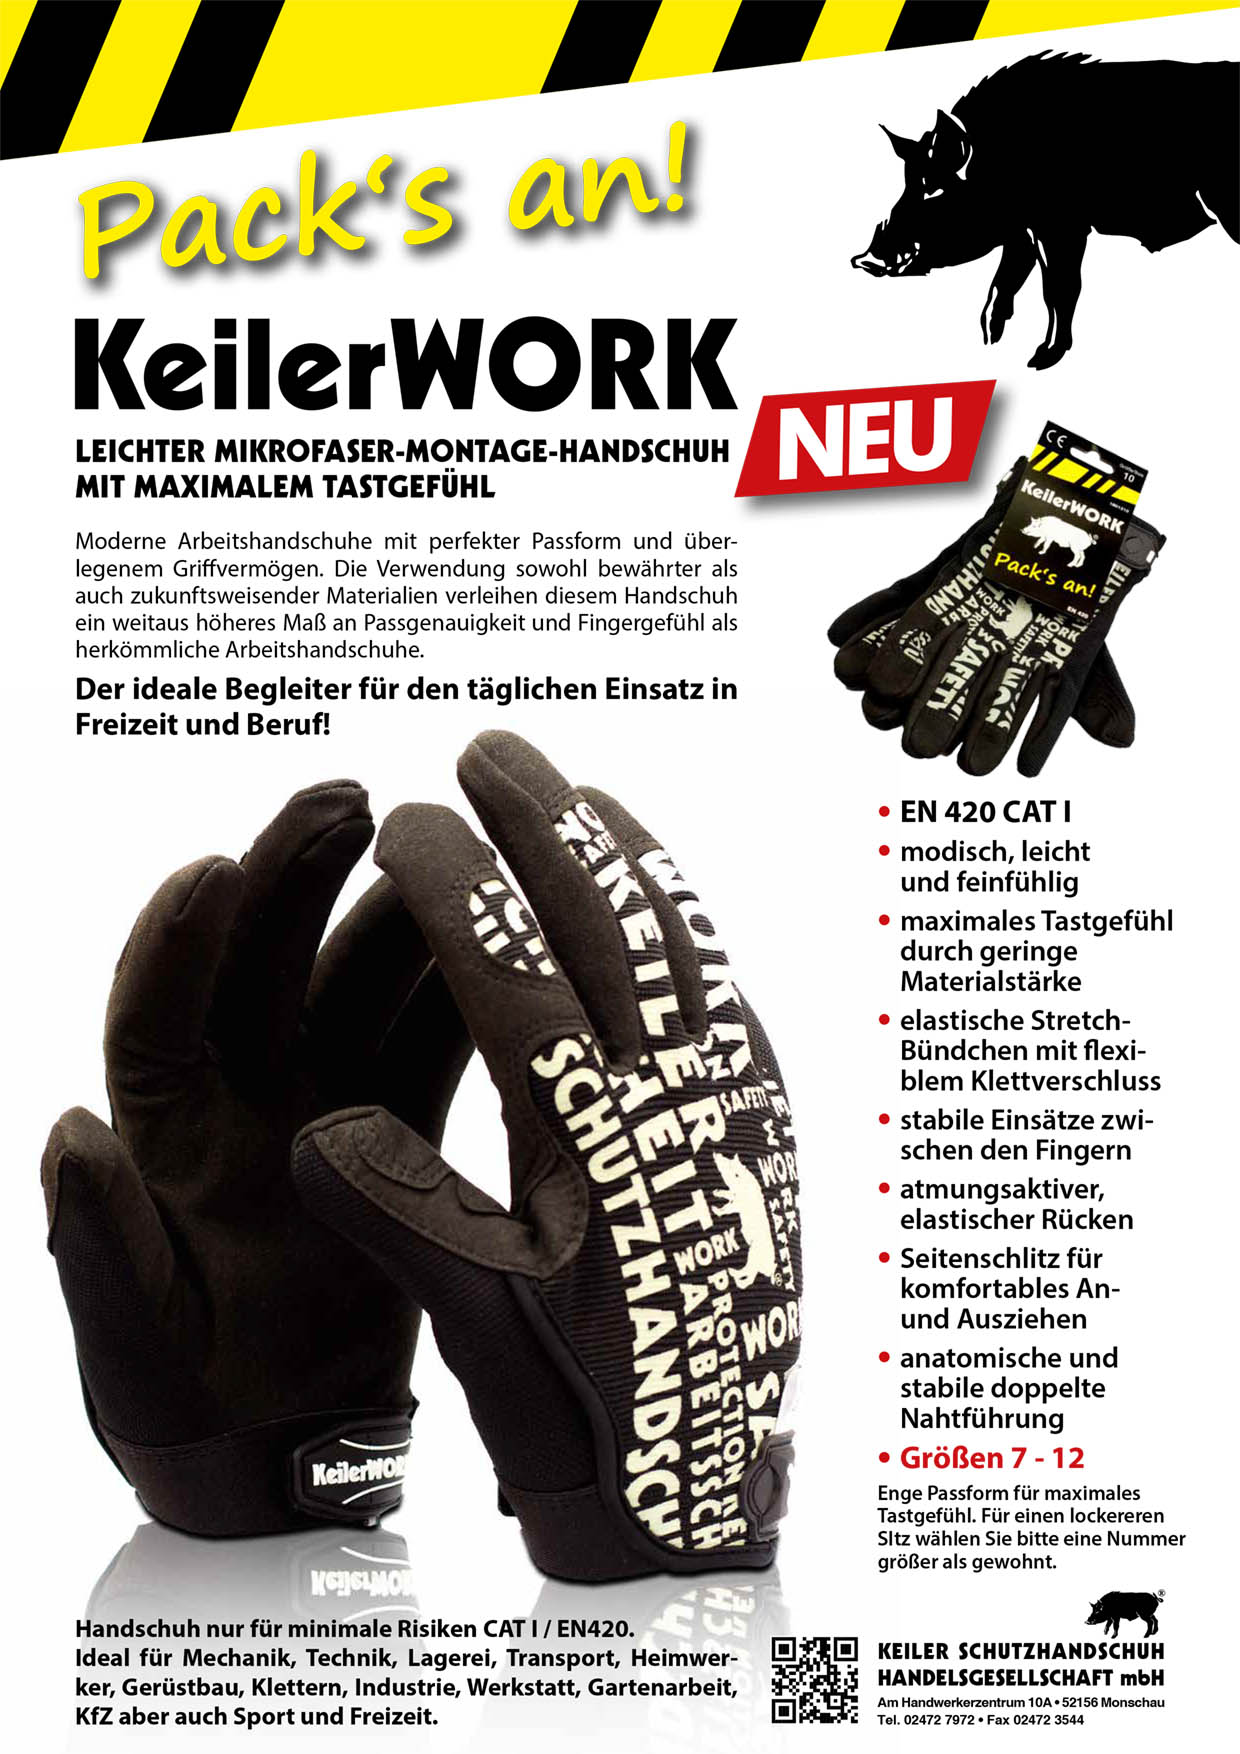 Keiler Work - Leichter Montage-Handschuh mit maximalem Tastgefühl